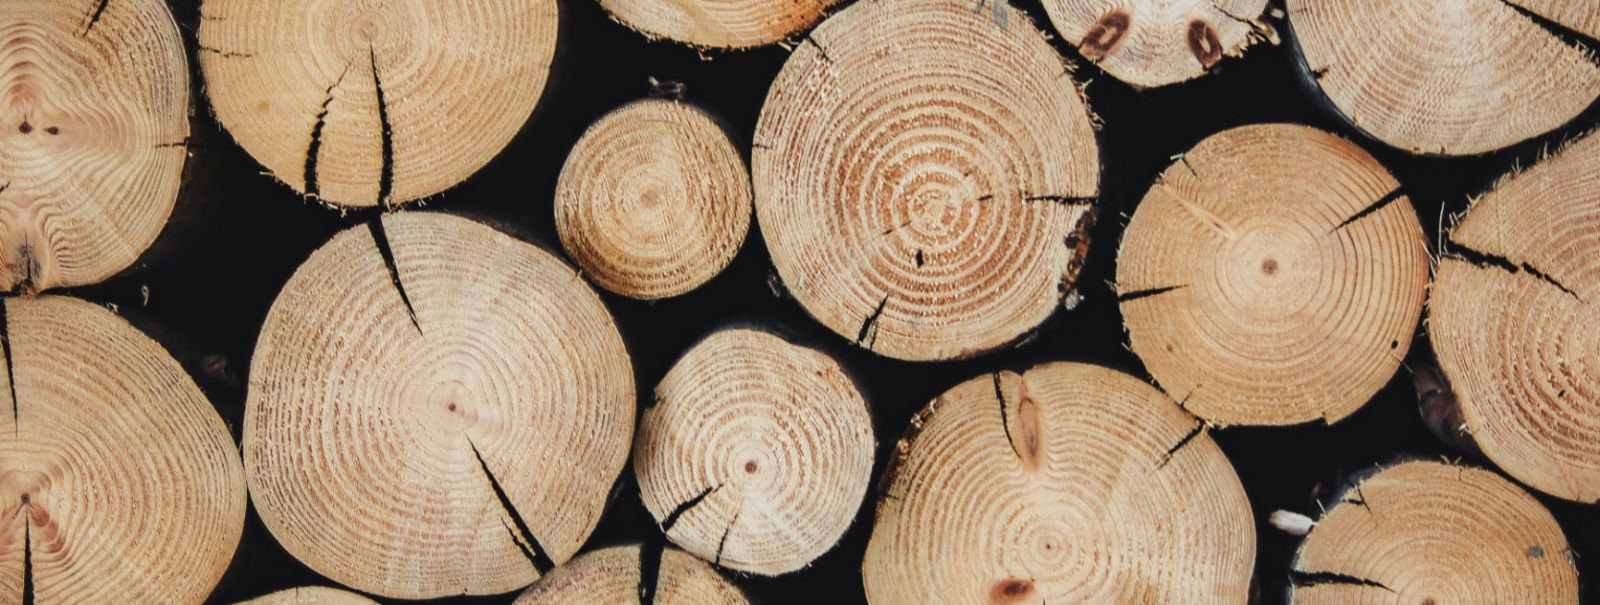 Puidu koristamine on metsamajanduse kriitiline komponent, tasakaalustades vajadust puidutoodete järele ja metsaökosüsteemide tervist. Jätkusuutlik puidu saagiku